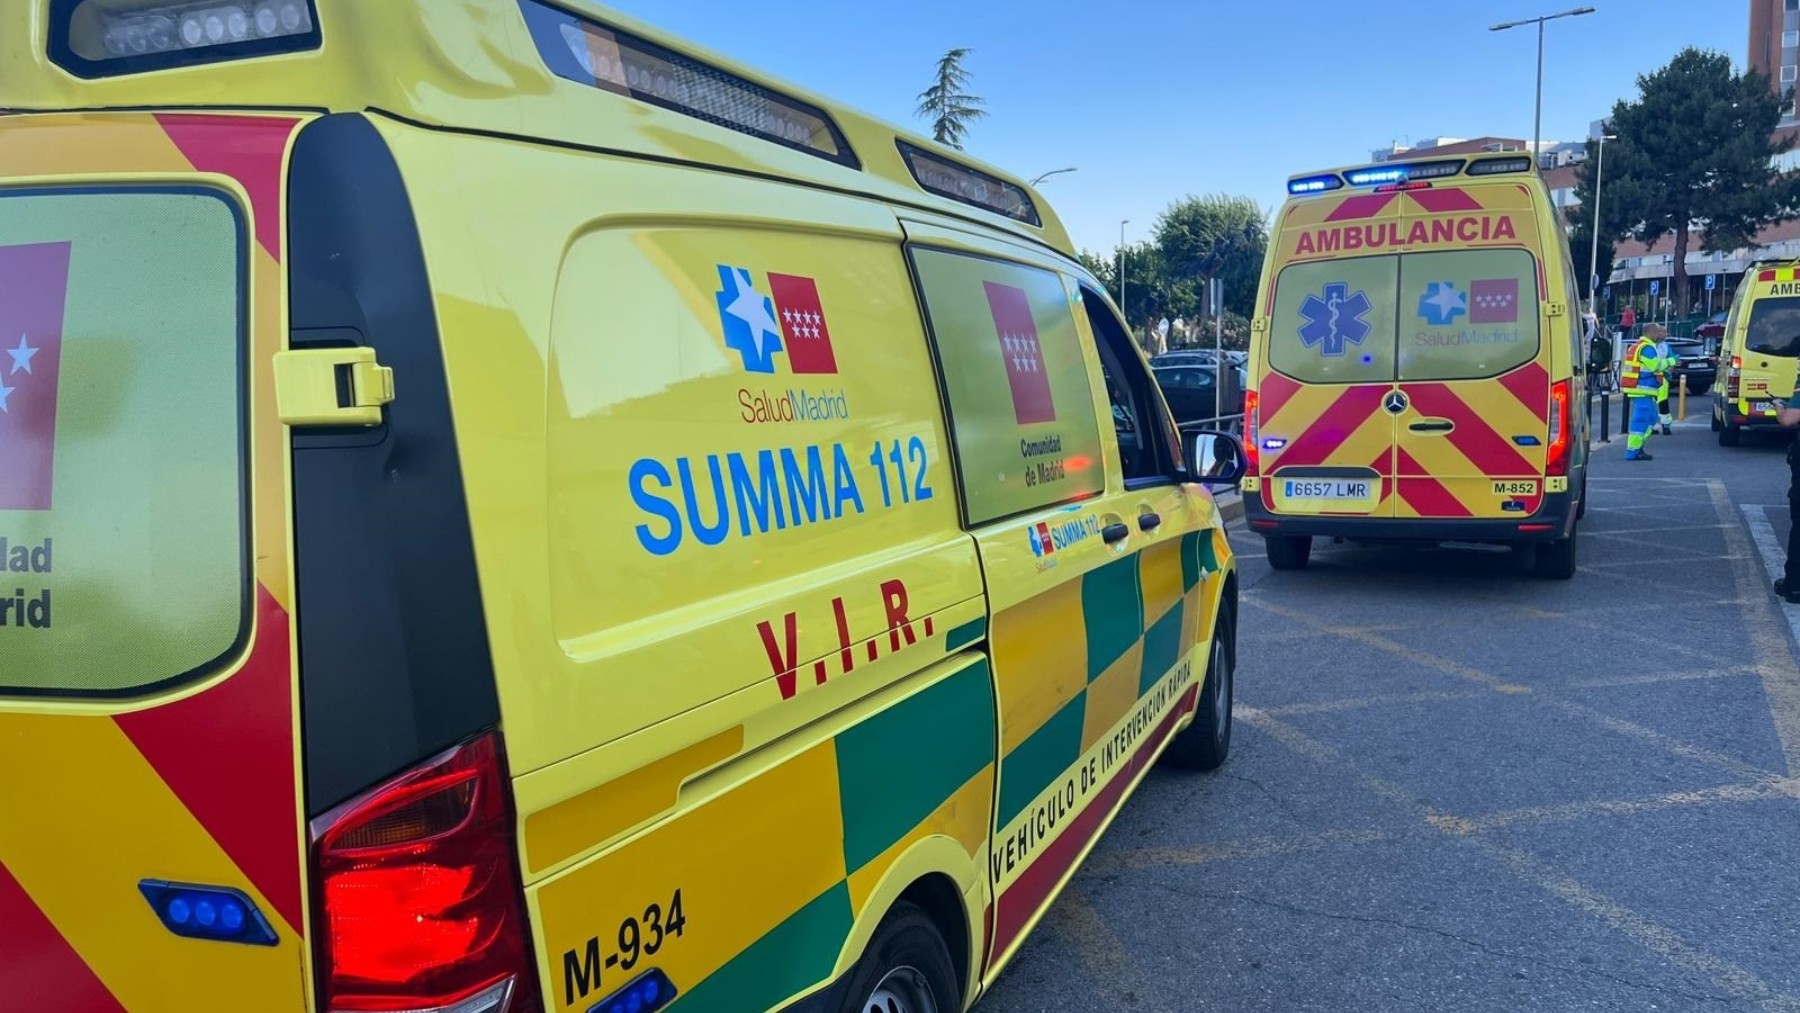 Imagen de ambulancias del Summa